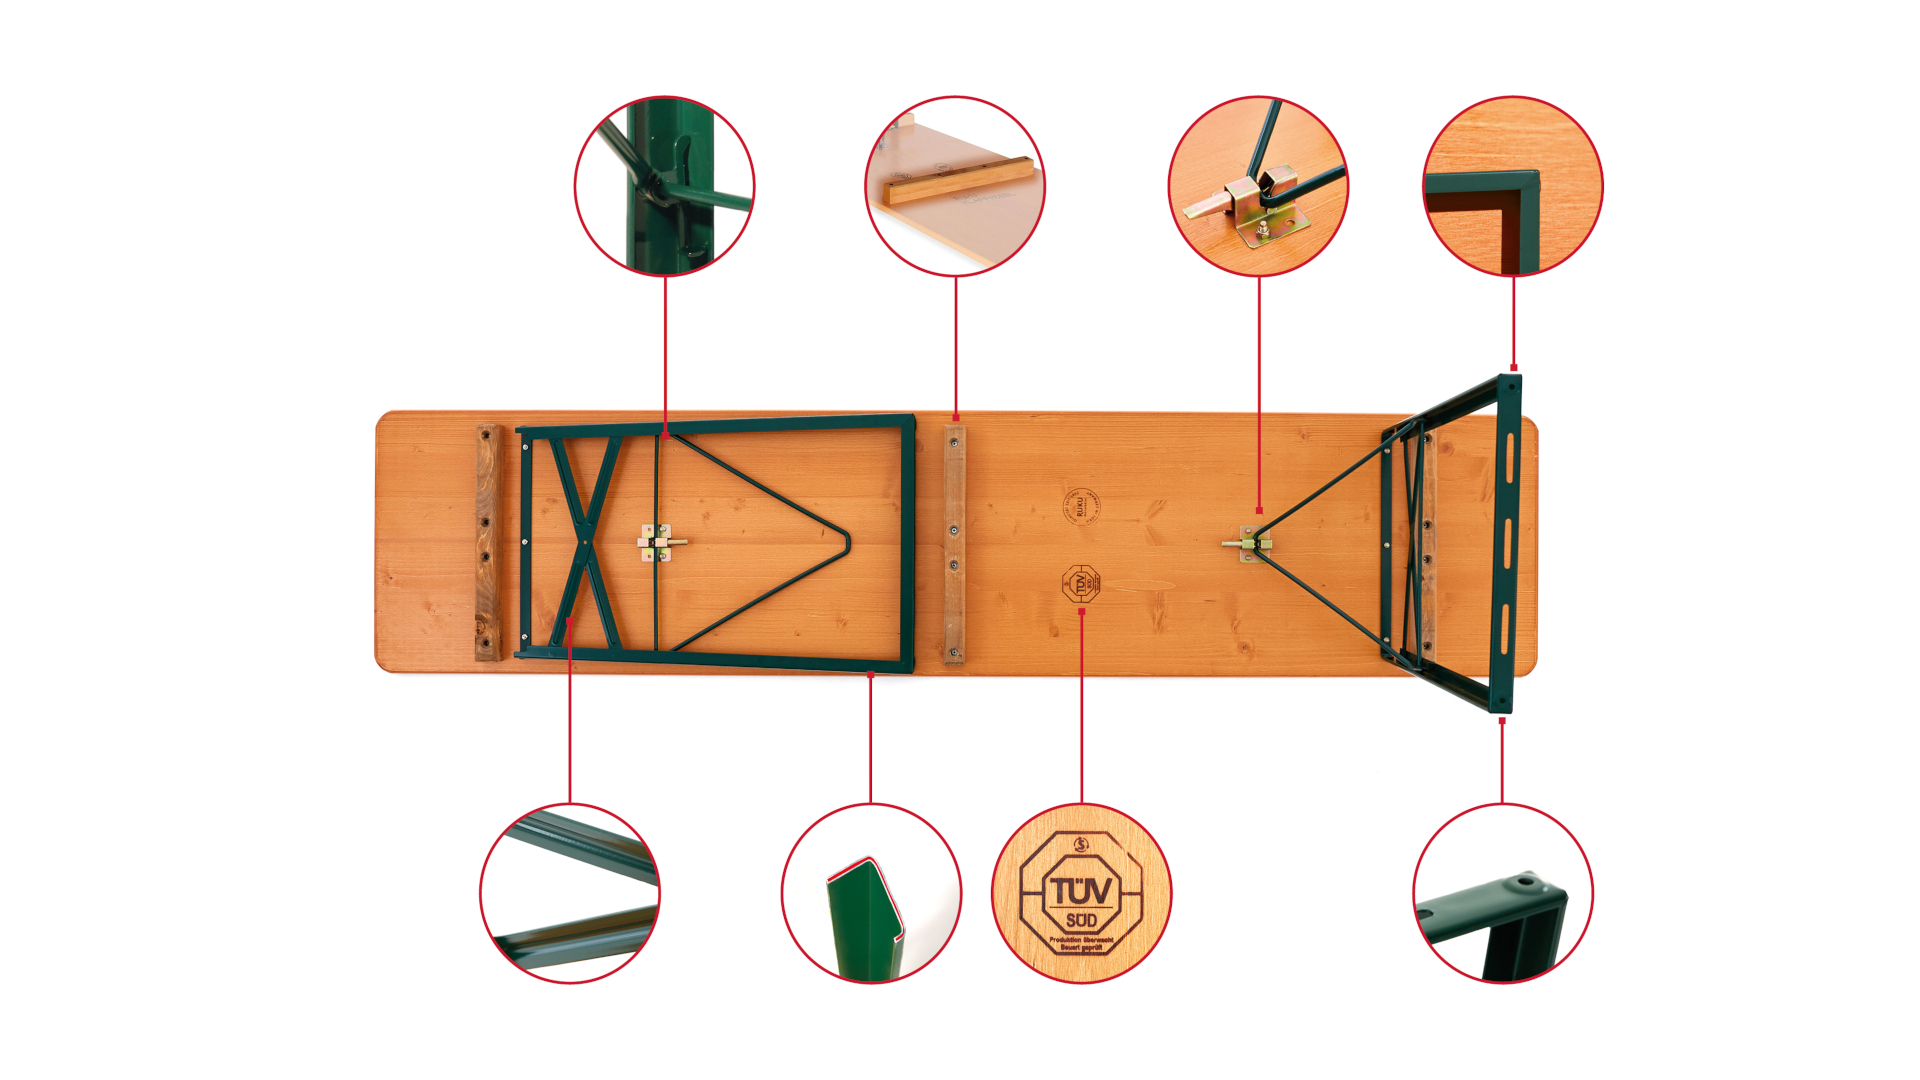 Die Unterseite der klassischen Bierzeltgarnitur inklusive kleinen Kreisen mit Detailfotos der Konstruktion werden in dieser Grafik dargestellt.